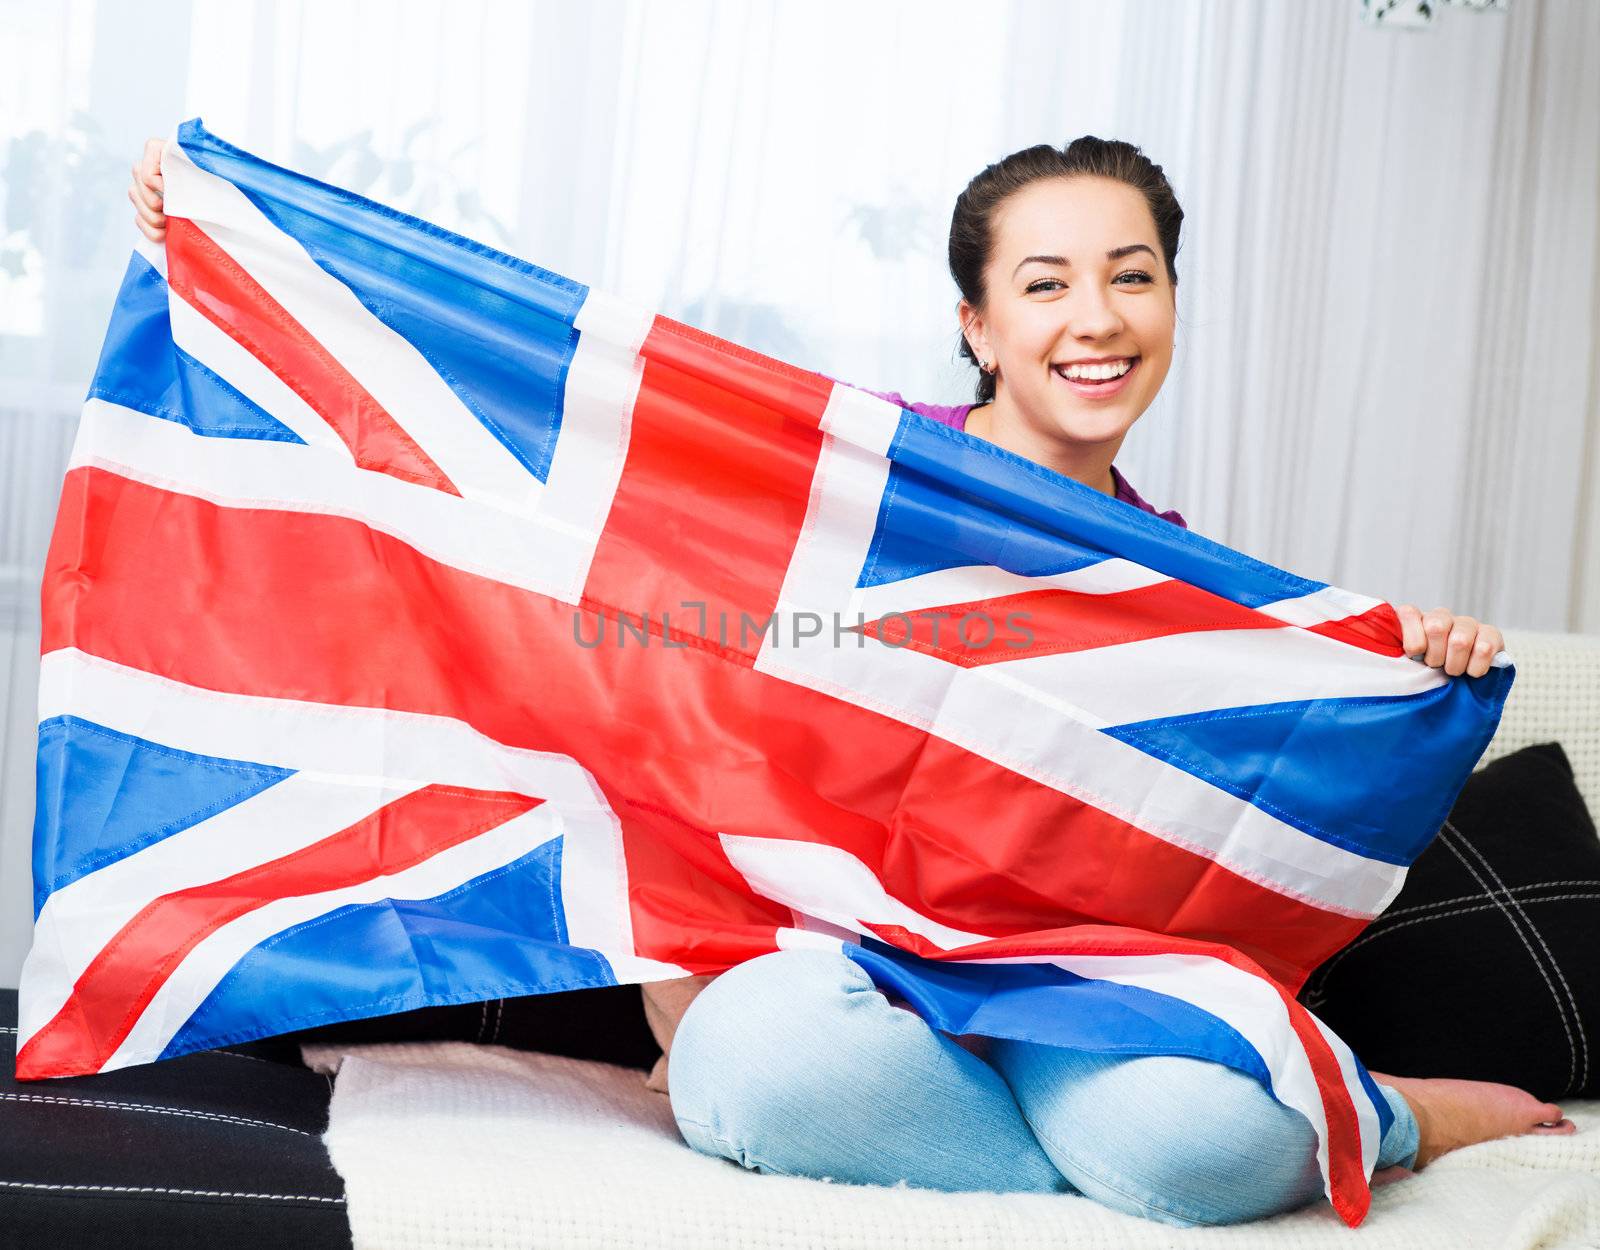 British girl holding the Jack Union flag